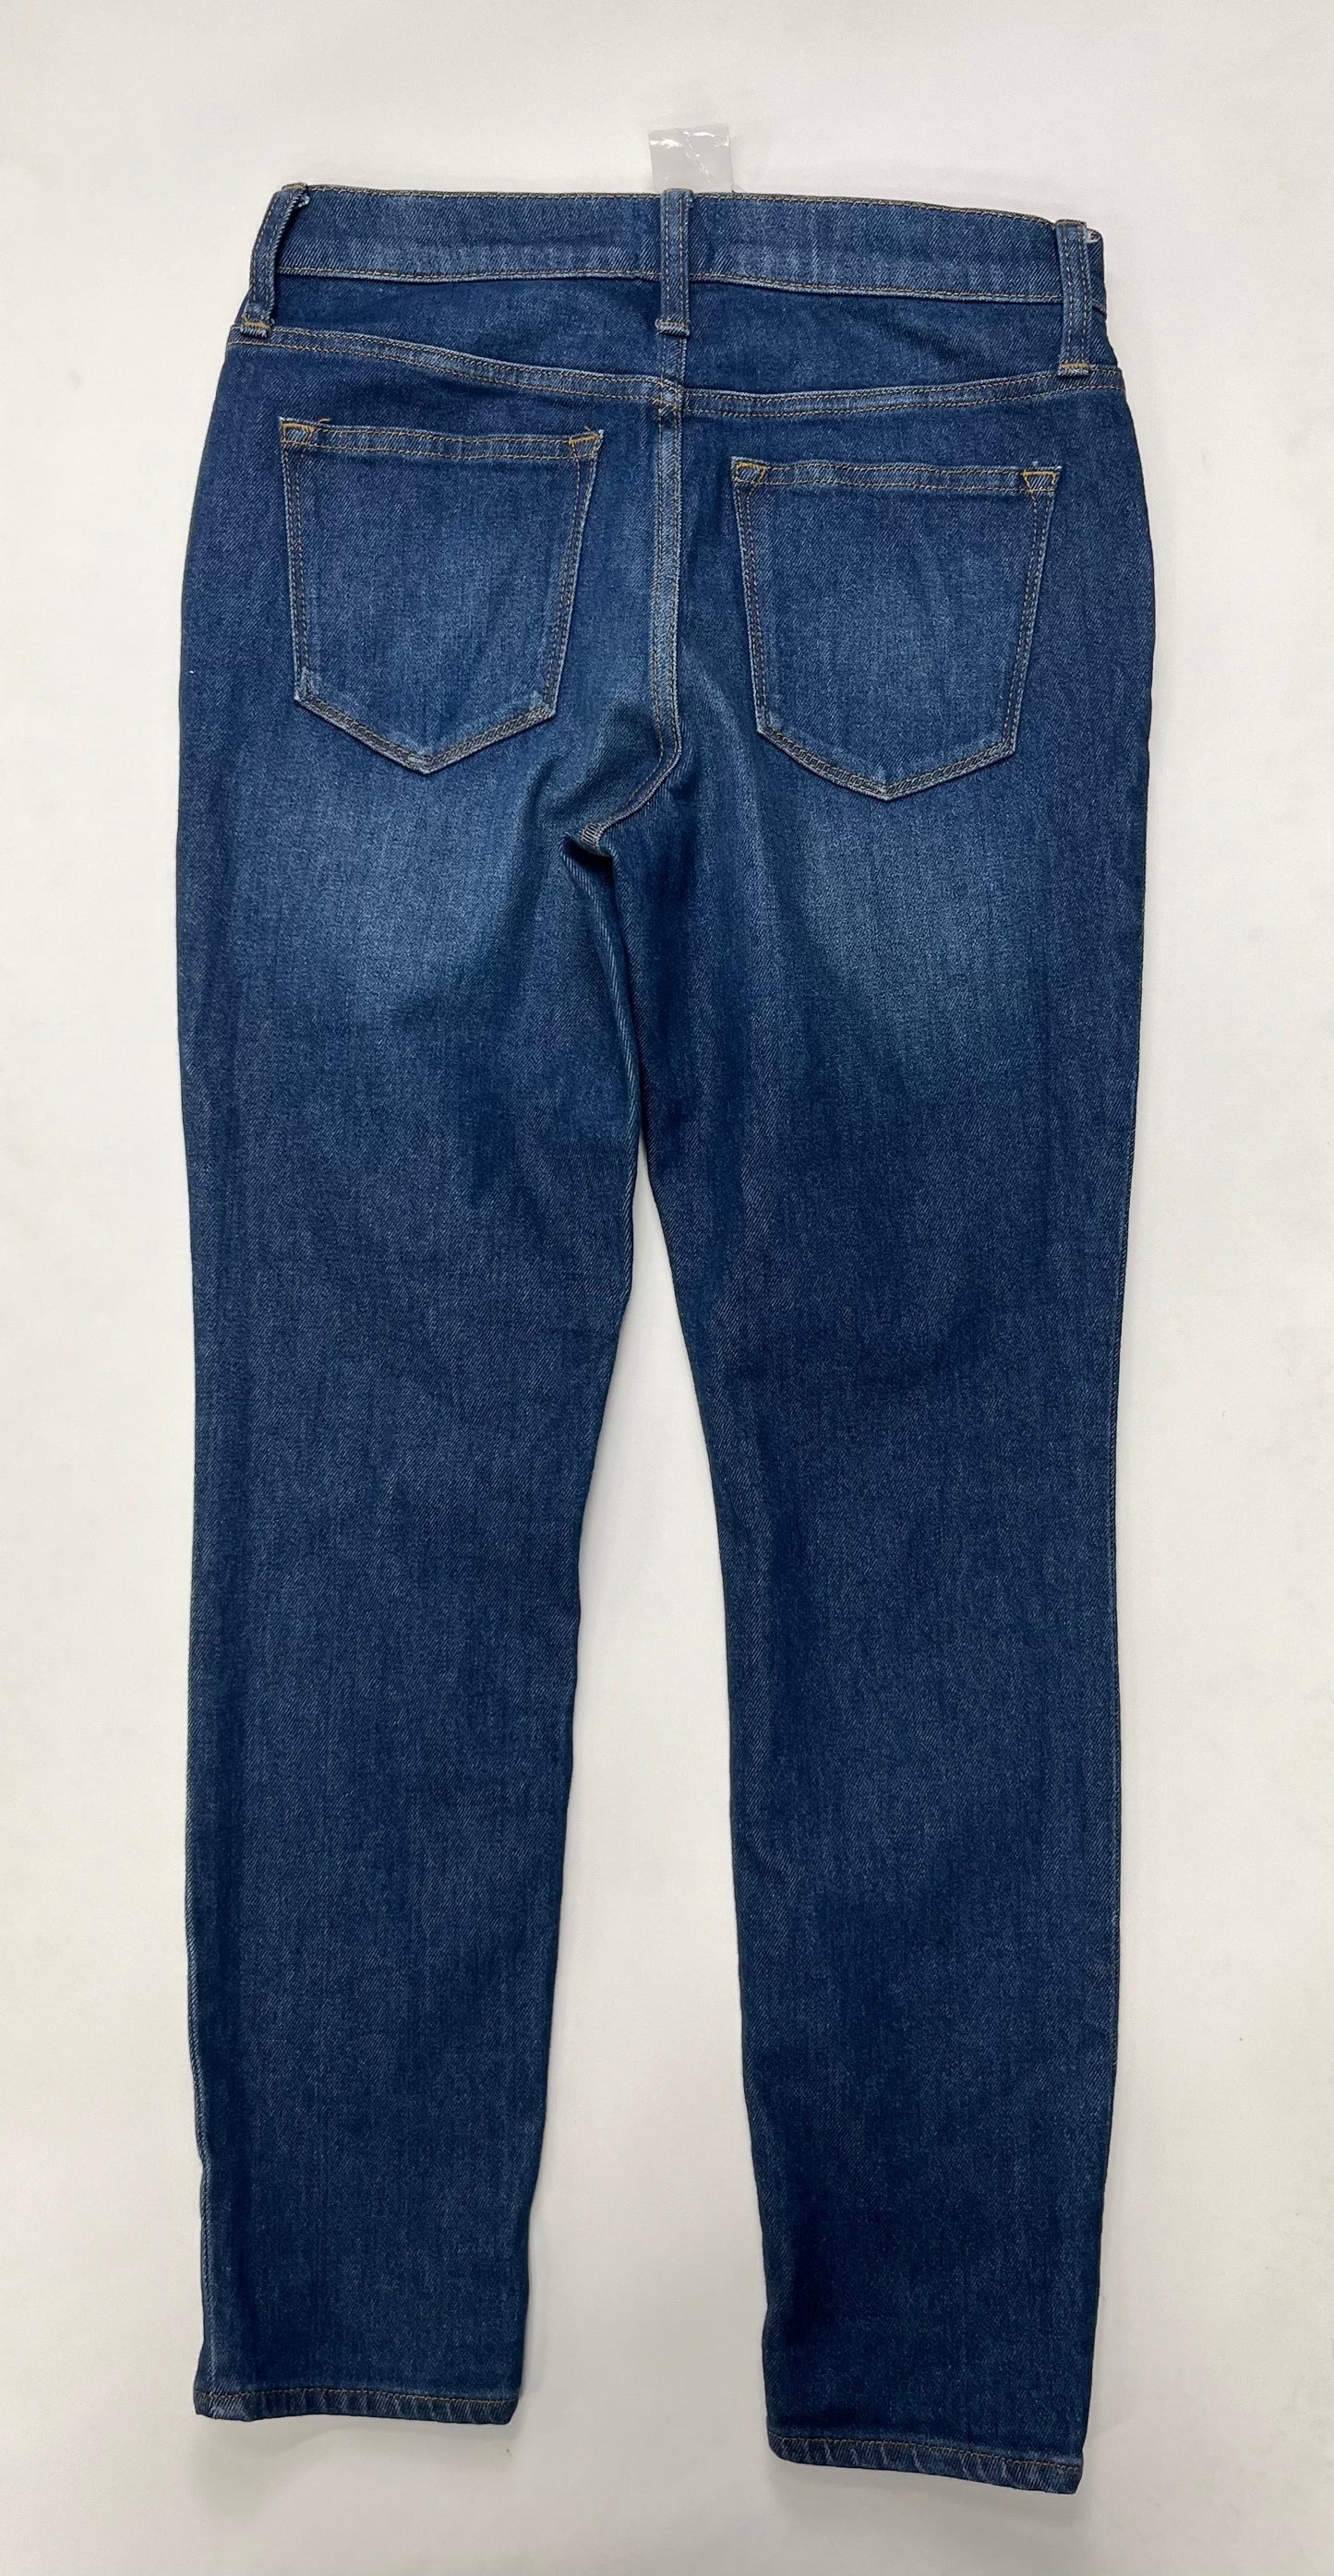 Jeans Skinny By J Crew  Size: 2